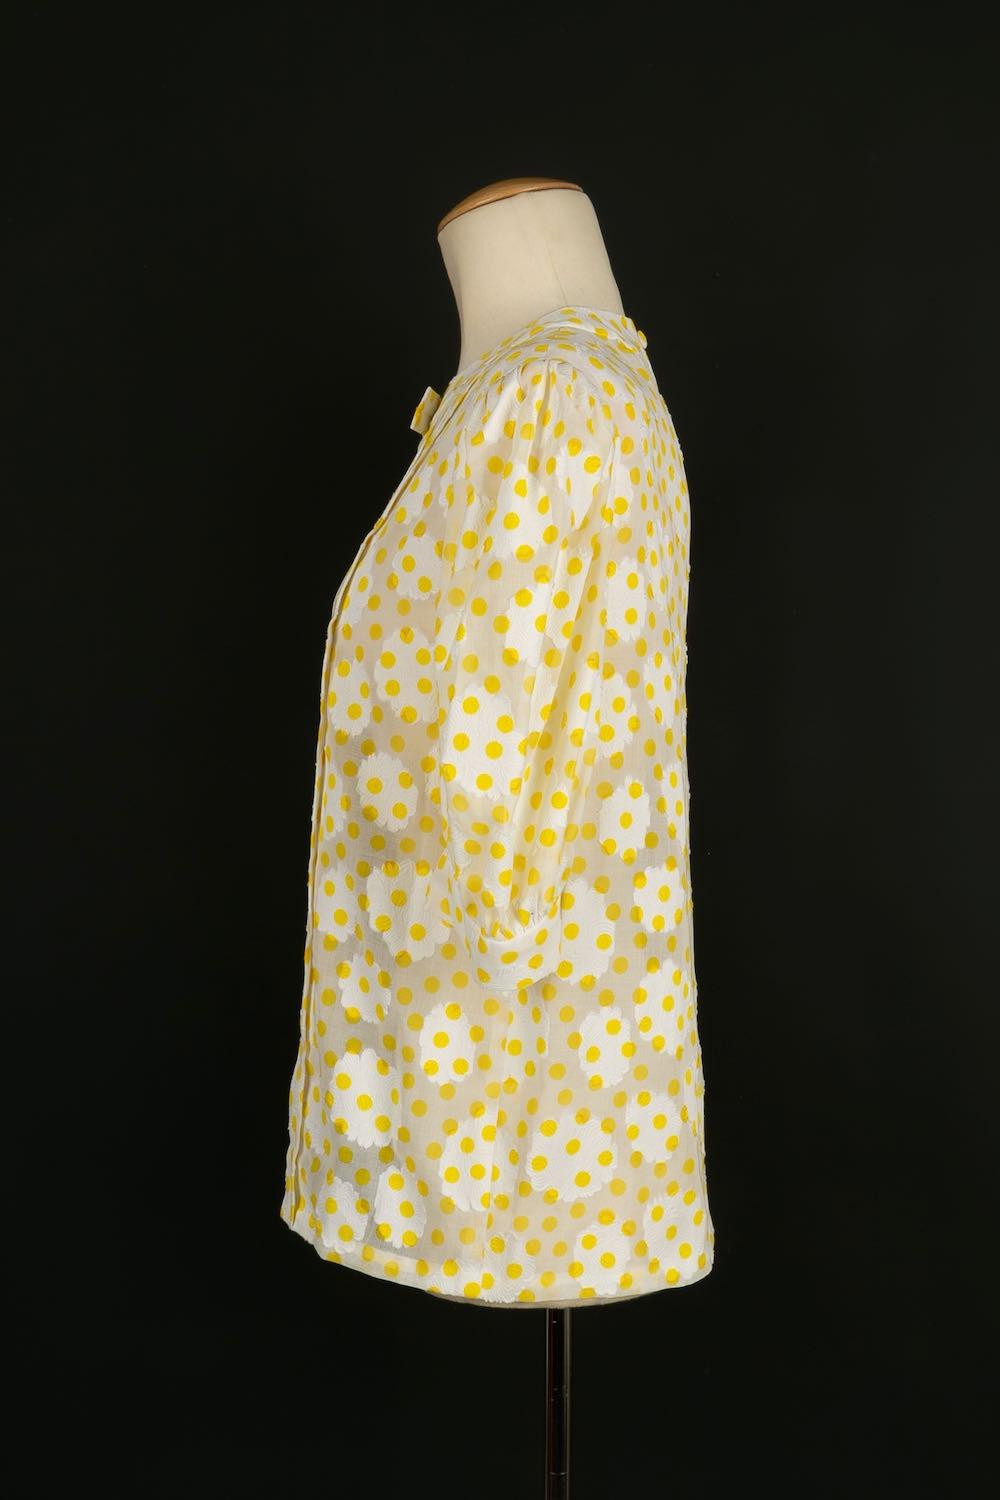 Jolie blouse vintage blanche à pois jaunes. Il n'y a pas d'étiquette de taille, mais il convient à un 36FR.

Informations complémentaires :
Condit : Très bon état.
Dimensions : Largeur des épaules : 41 cm - Poitrine : 44 cm - Longueur des manches :